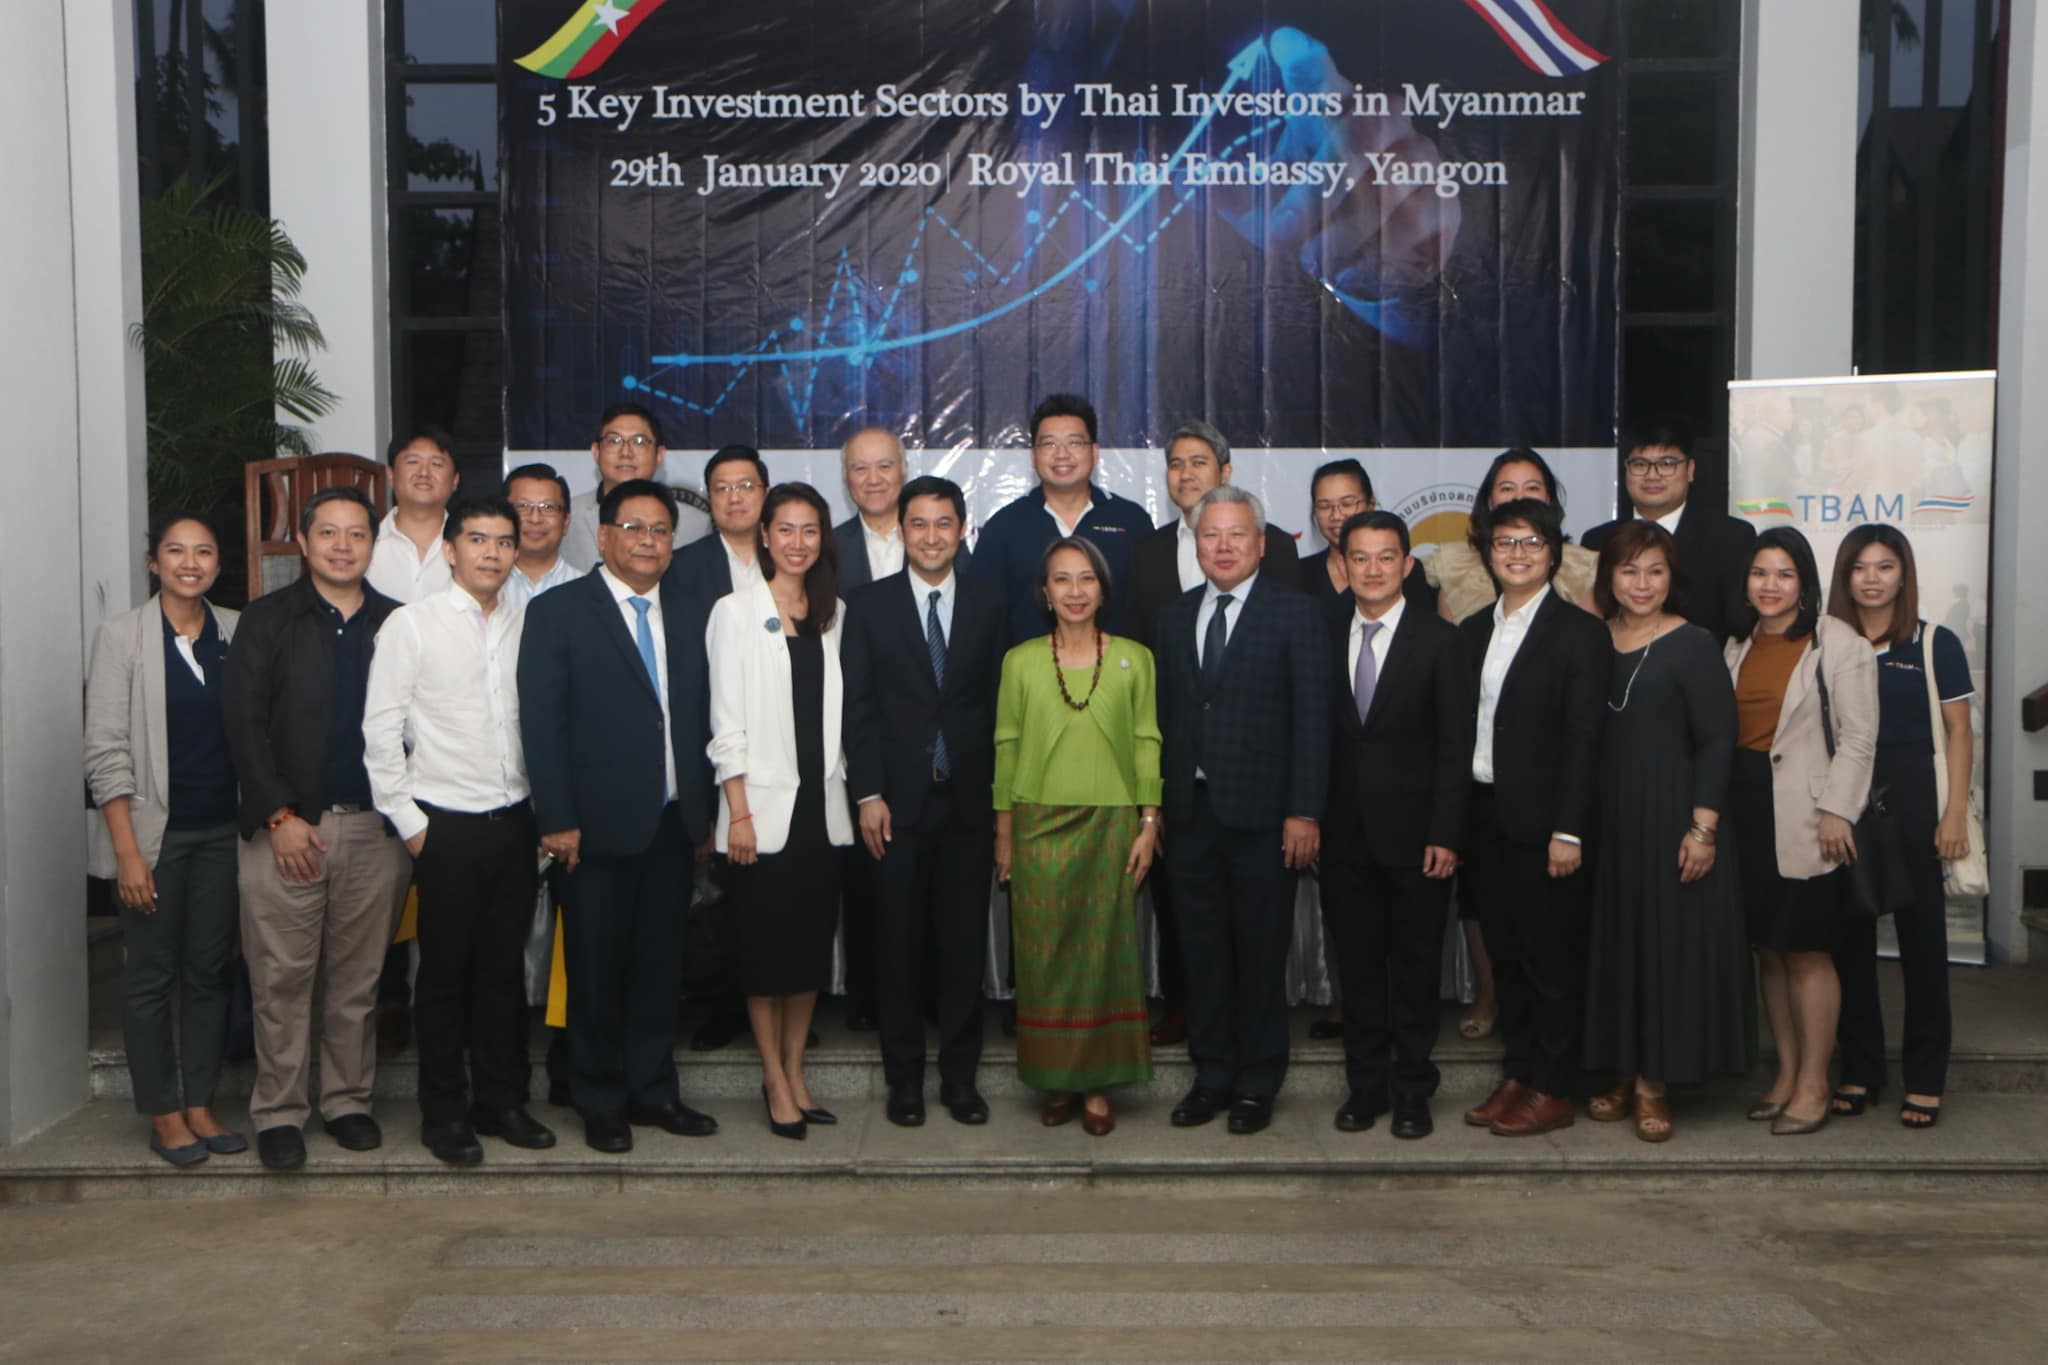 งานสัมมนาพิเศษ หัวข้อ "5 Key Investment Sectors by Thai Investors in Myanmar" งานสัมมนาพิเศษ หัวข้อ "5 Key Investment Sectors by Thai Investors in Myanmar"